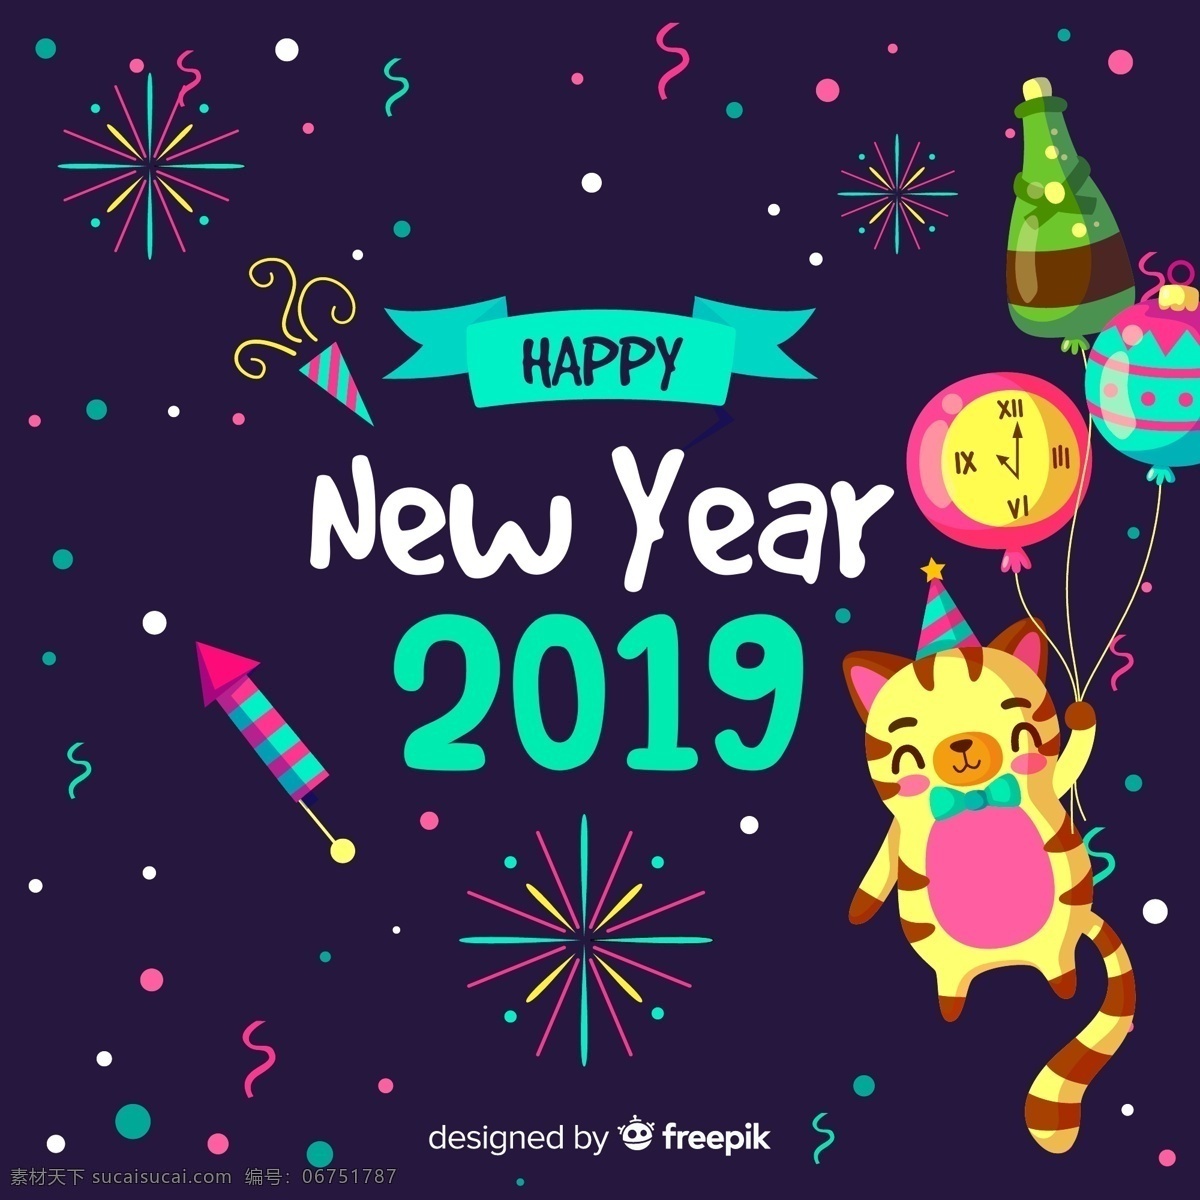 2019 年 可爱 新年 猫咪 矢量 礼花 烟花火箭 时钟 气球 香槟酒 happy new year 2019年 文化艺术 节日庆祝